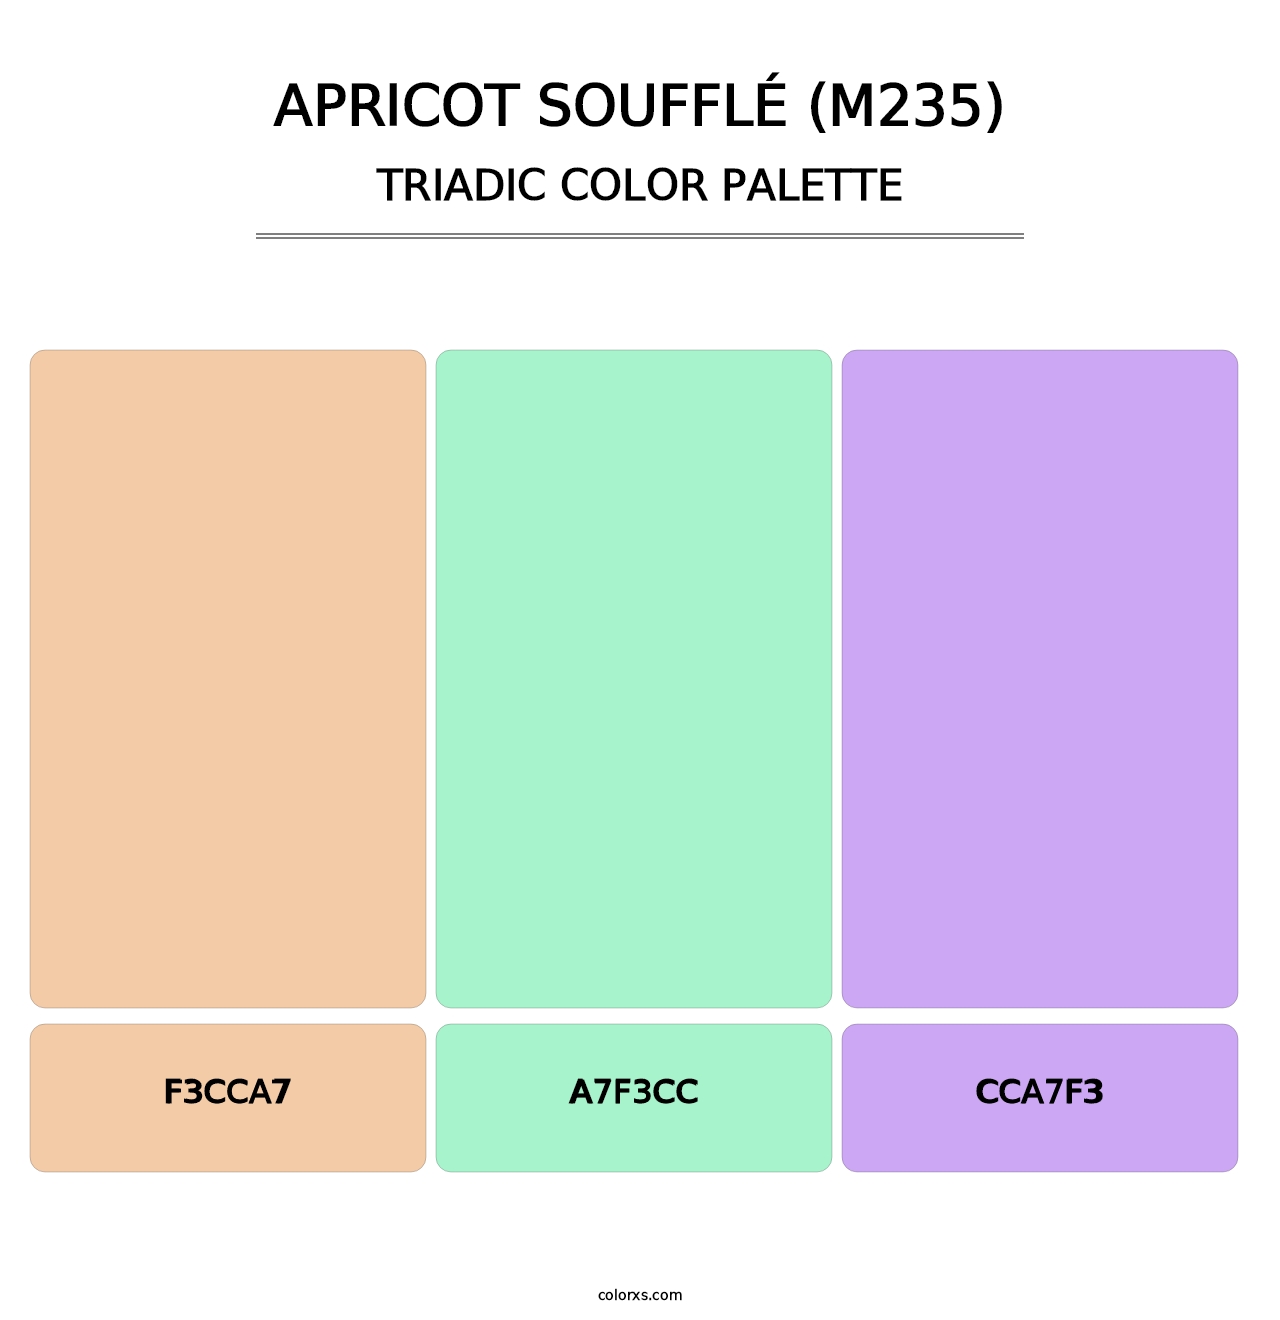 Apricot Soufflé (M235) - Triadic Color Palette